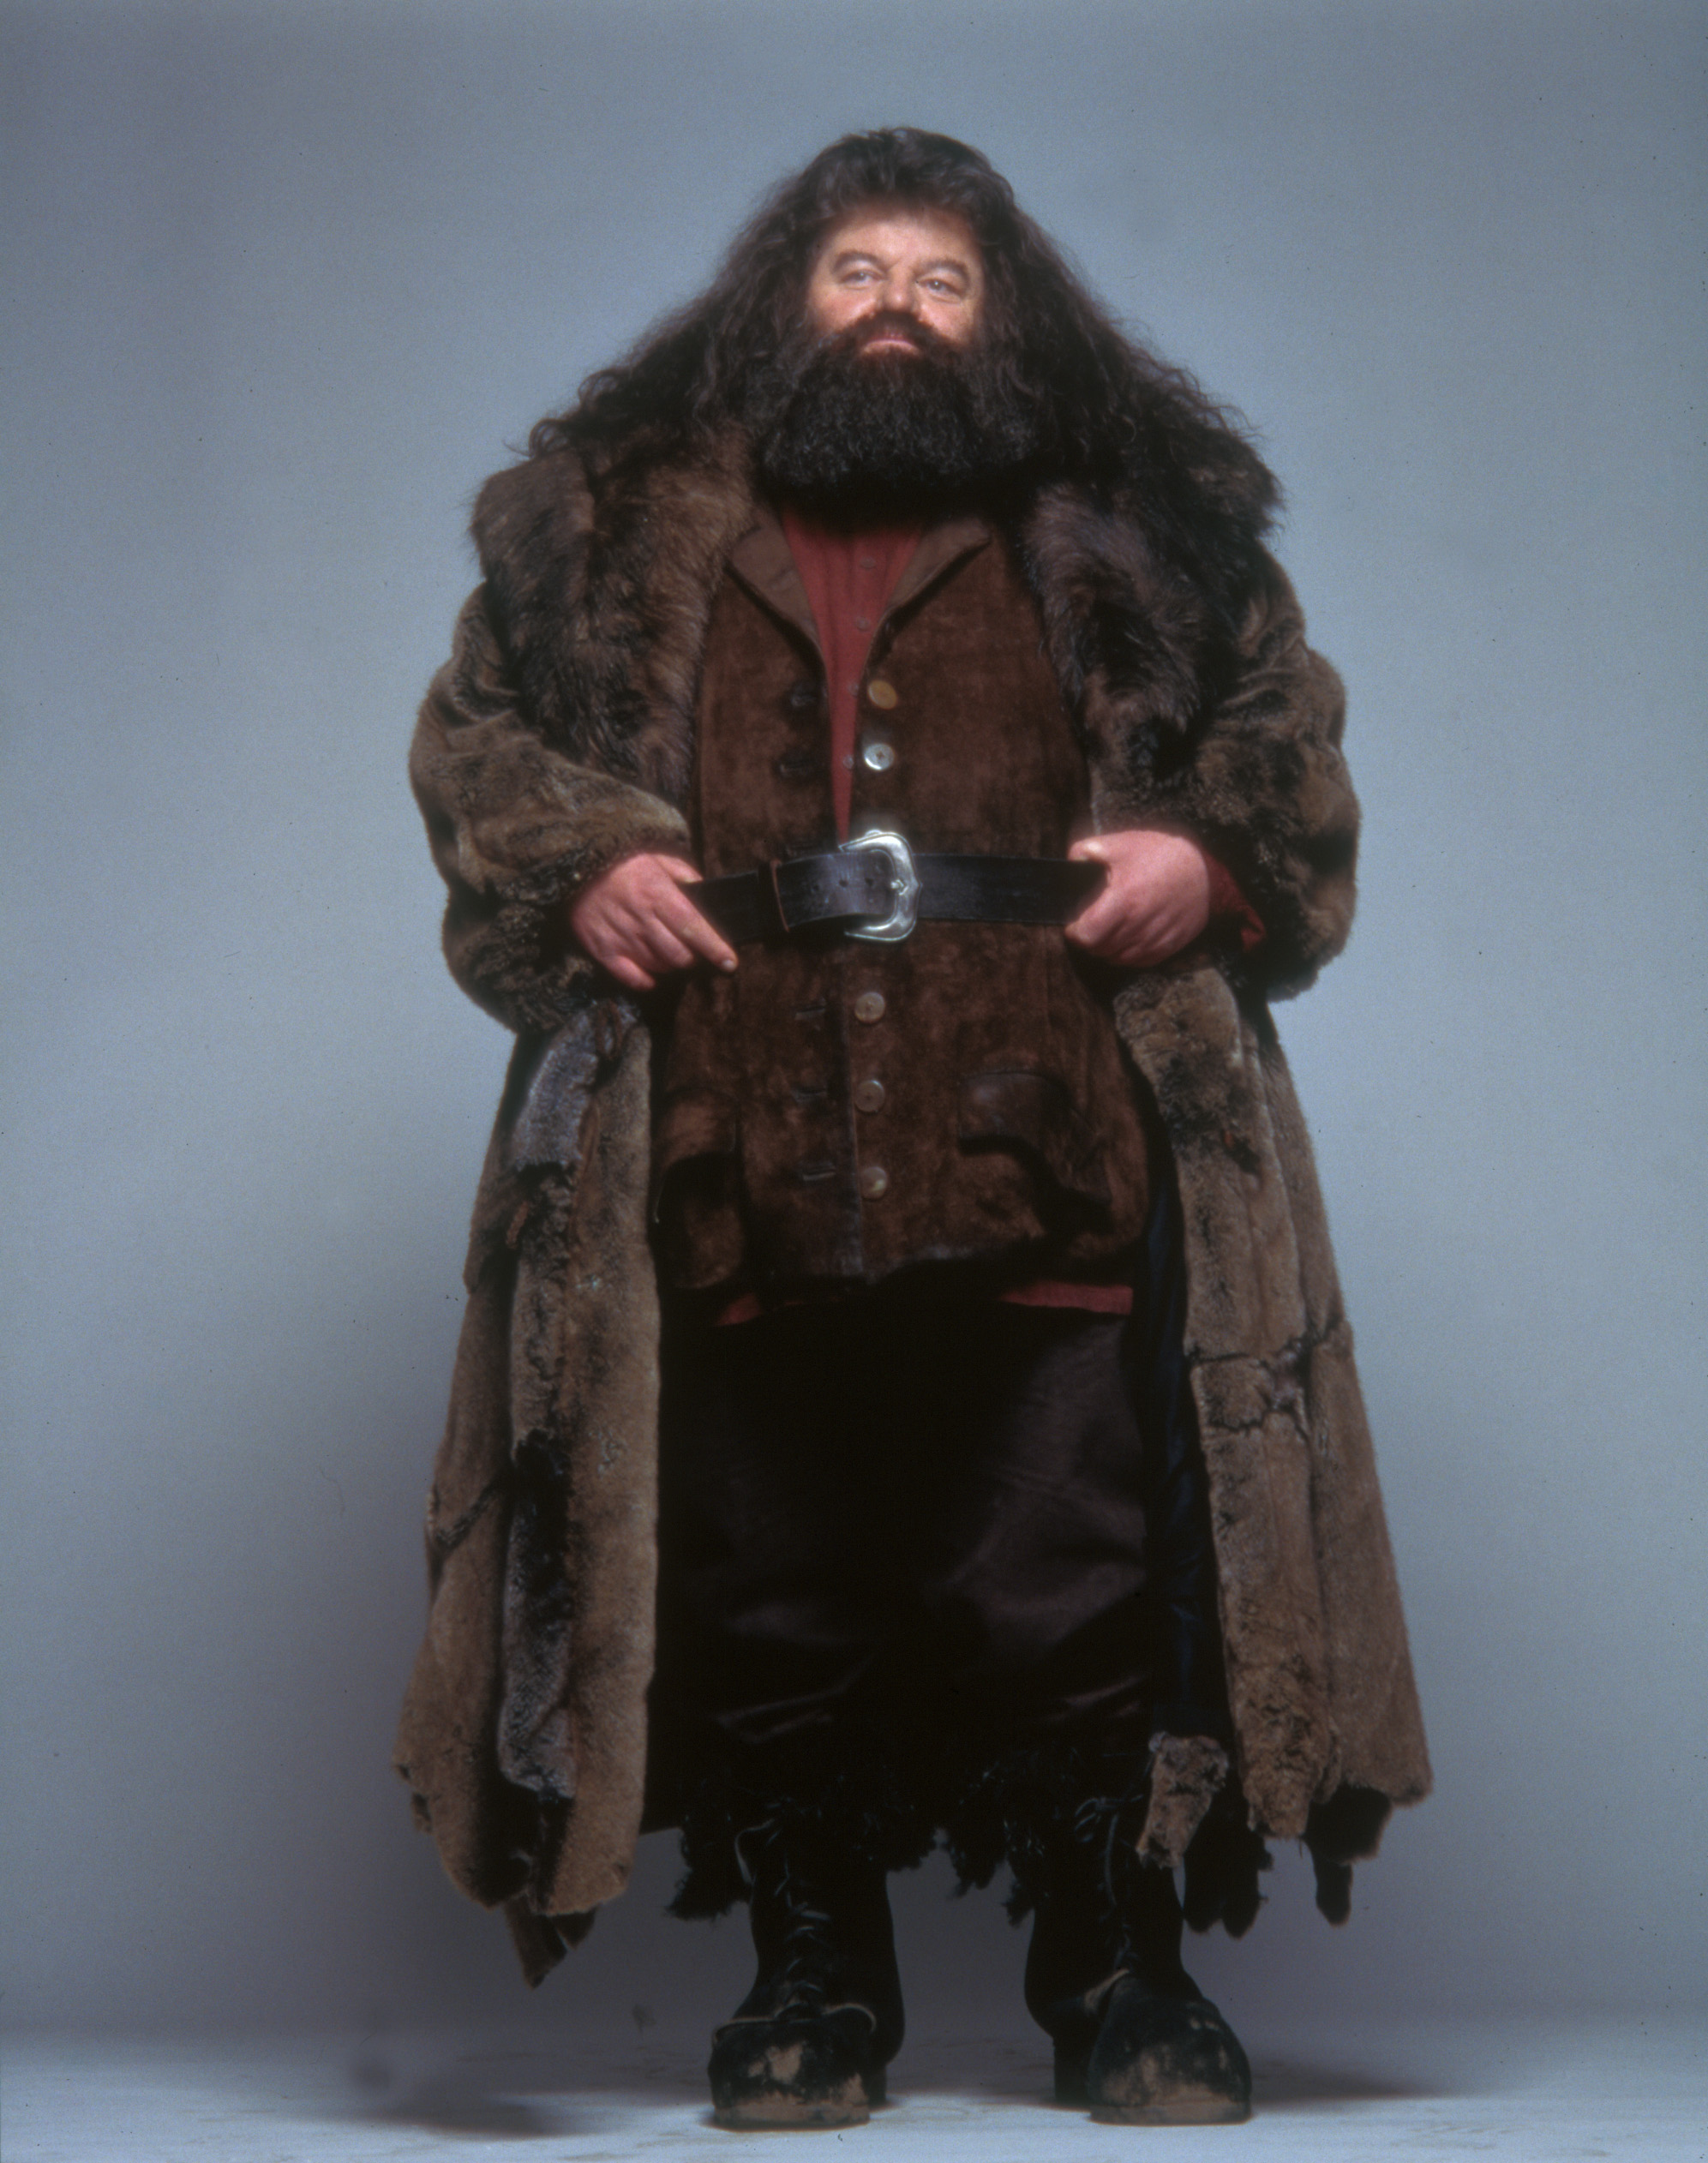 Hagrid-rubeus-hagrid-40663164-1993-2524.jpg